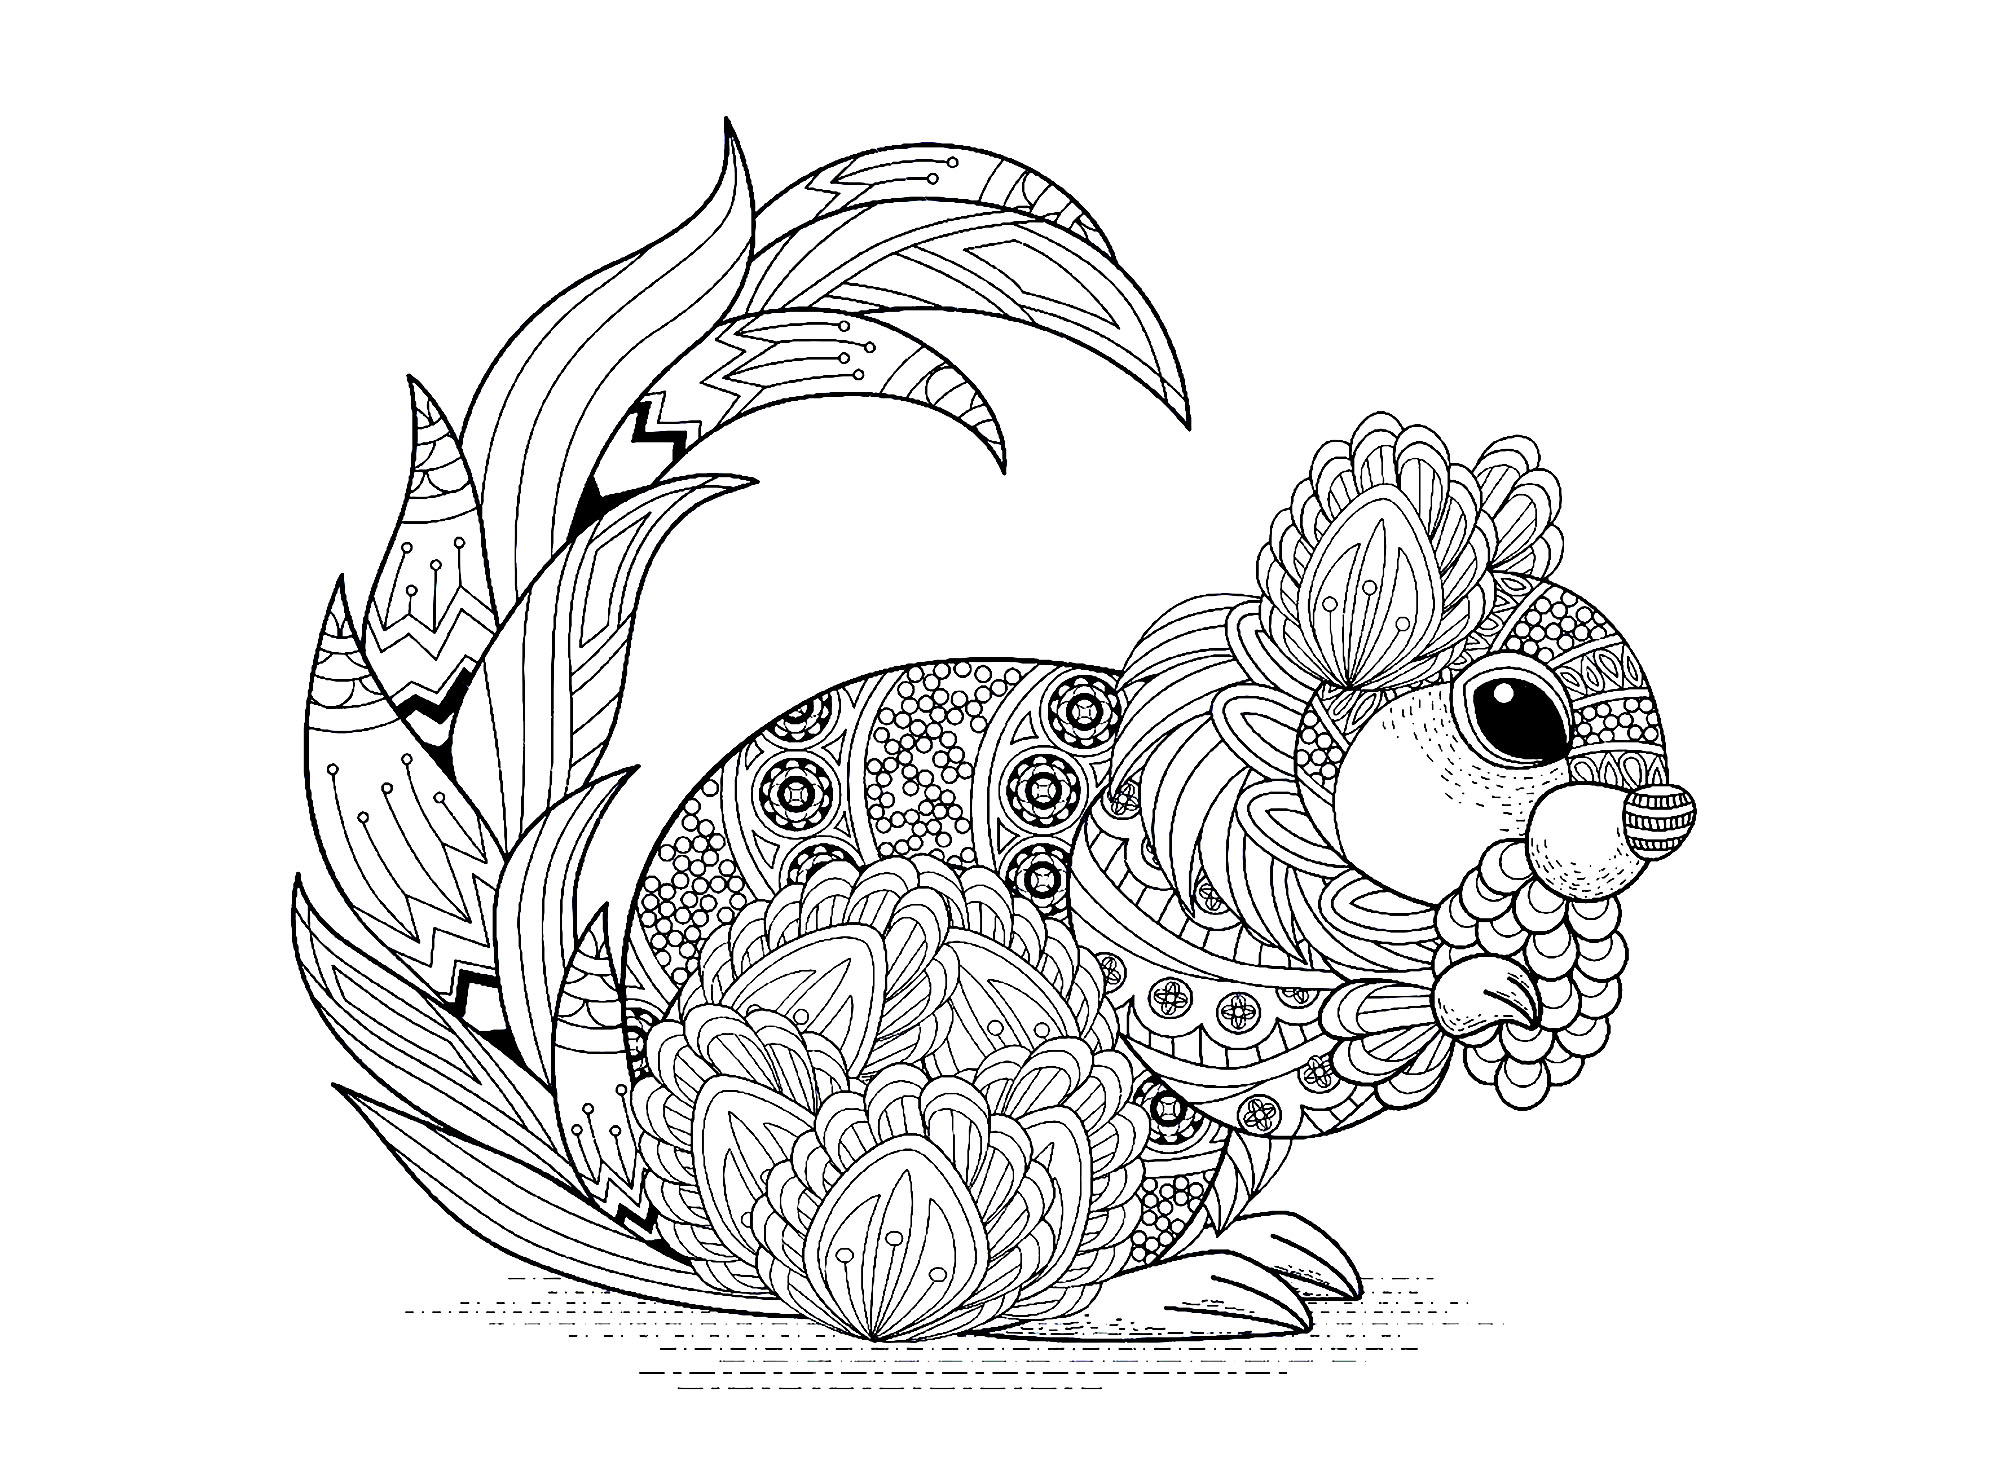 Desenhos para colorir de Esquilos e marmotas para imprimir, Artista : Kchung   Fonte : 123rf